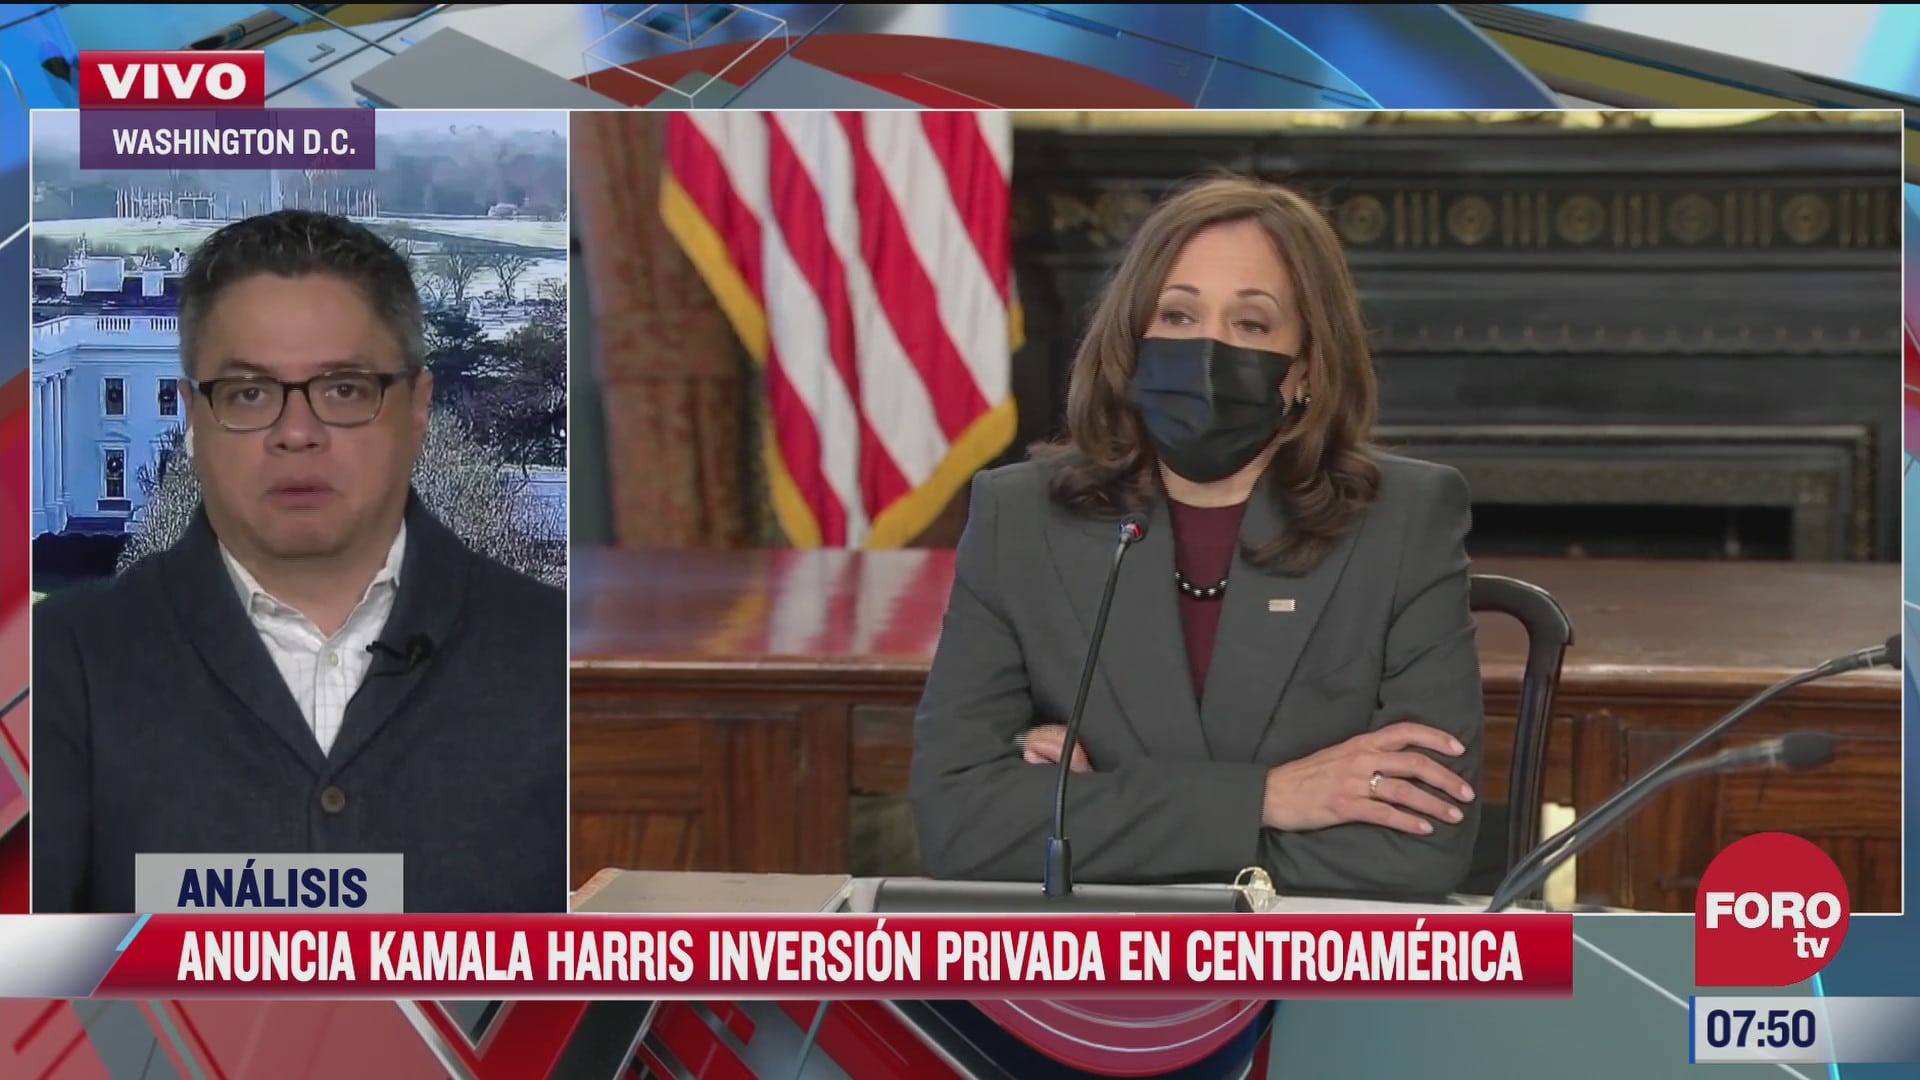 kamala harris anuncia nuevas inversiones en centroamerica el analisis en estrictamente personal